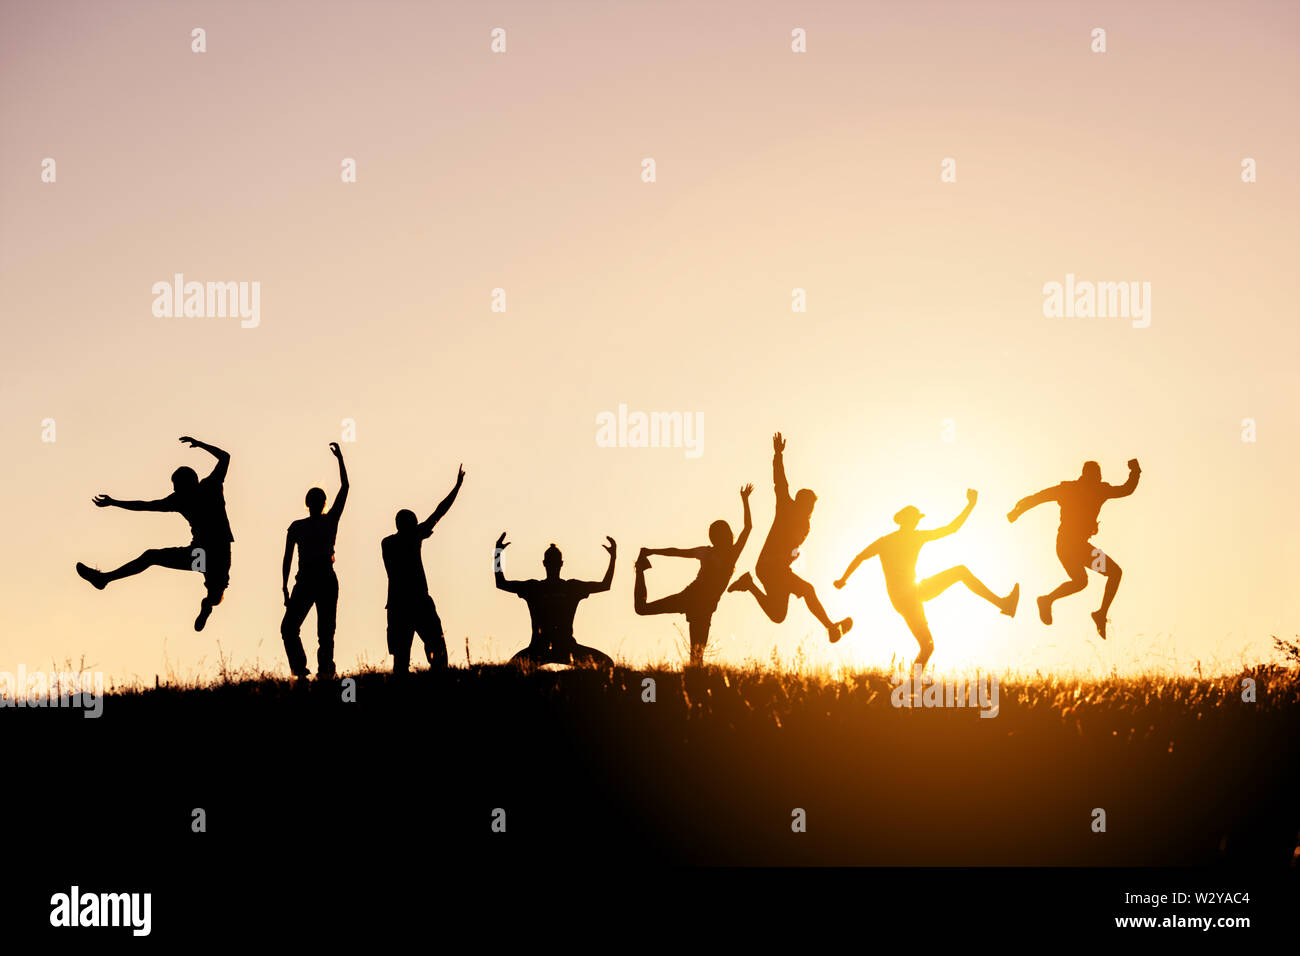 Silhouettes de grand groupe d'amis heureux saute et s'amusant contre sunset sky Banque D'Images